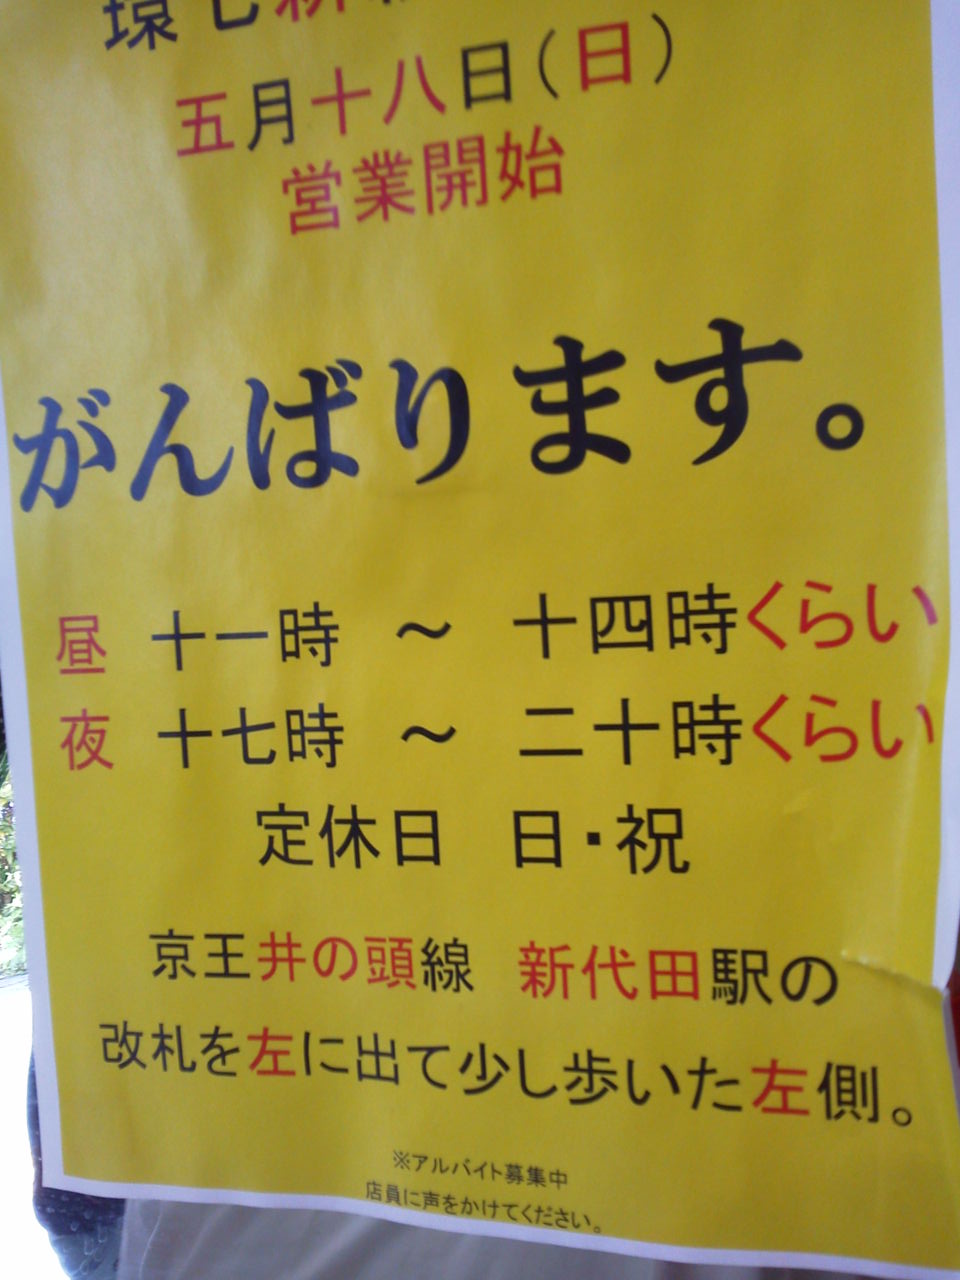 三田本店に掲示されていたポスター